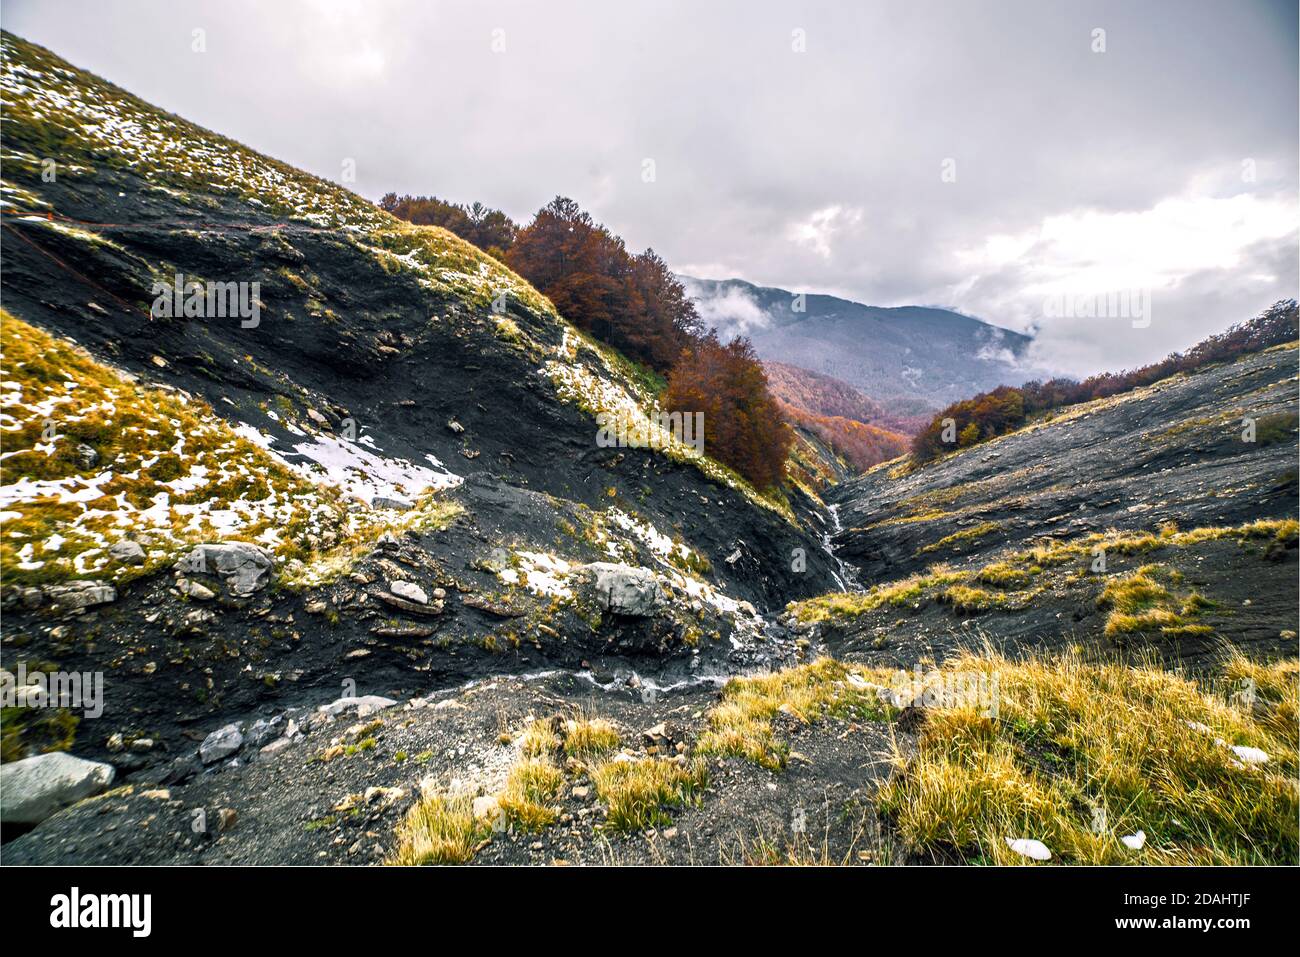 Vista panoramica della valle nera e delle sorgenti d'acqua durante una giornata nuvolosa in autunno, Monte Cusna, Reggio Emilia, Italia Foto Stock